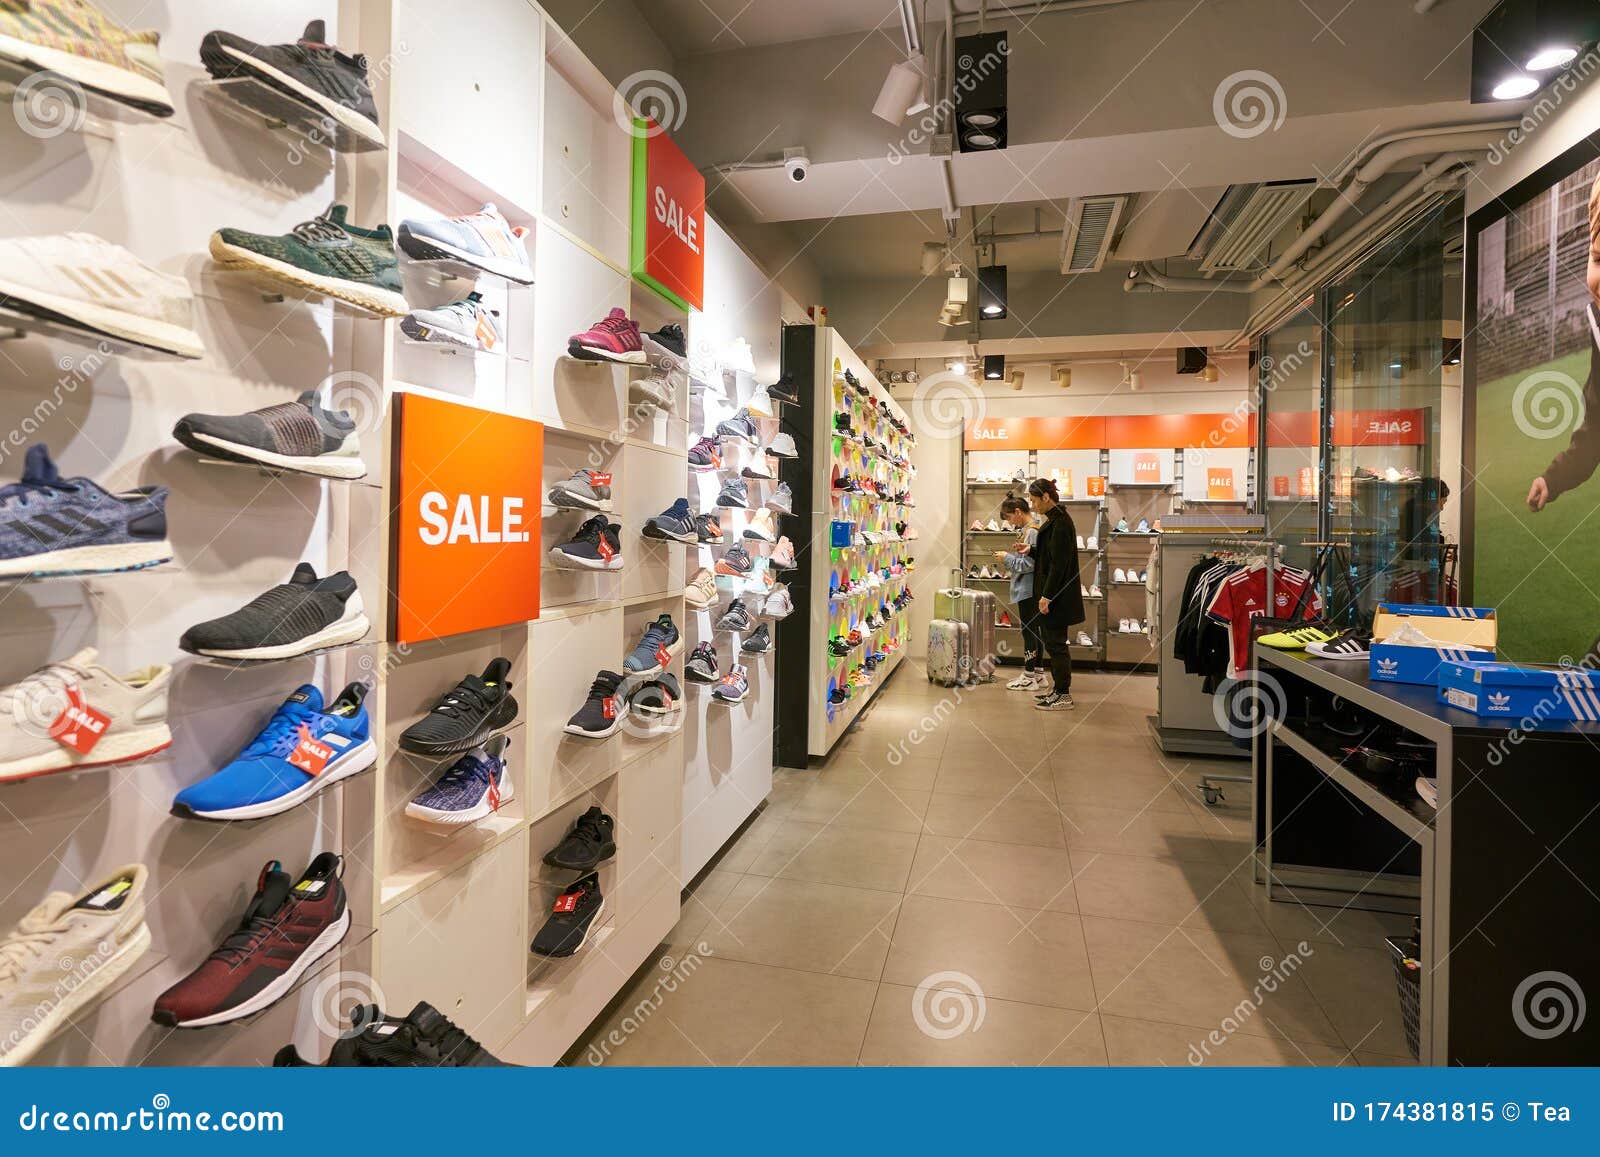 Innecesario Pocos estante Adidas store editorial image. Image of adidas, business - 174381815